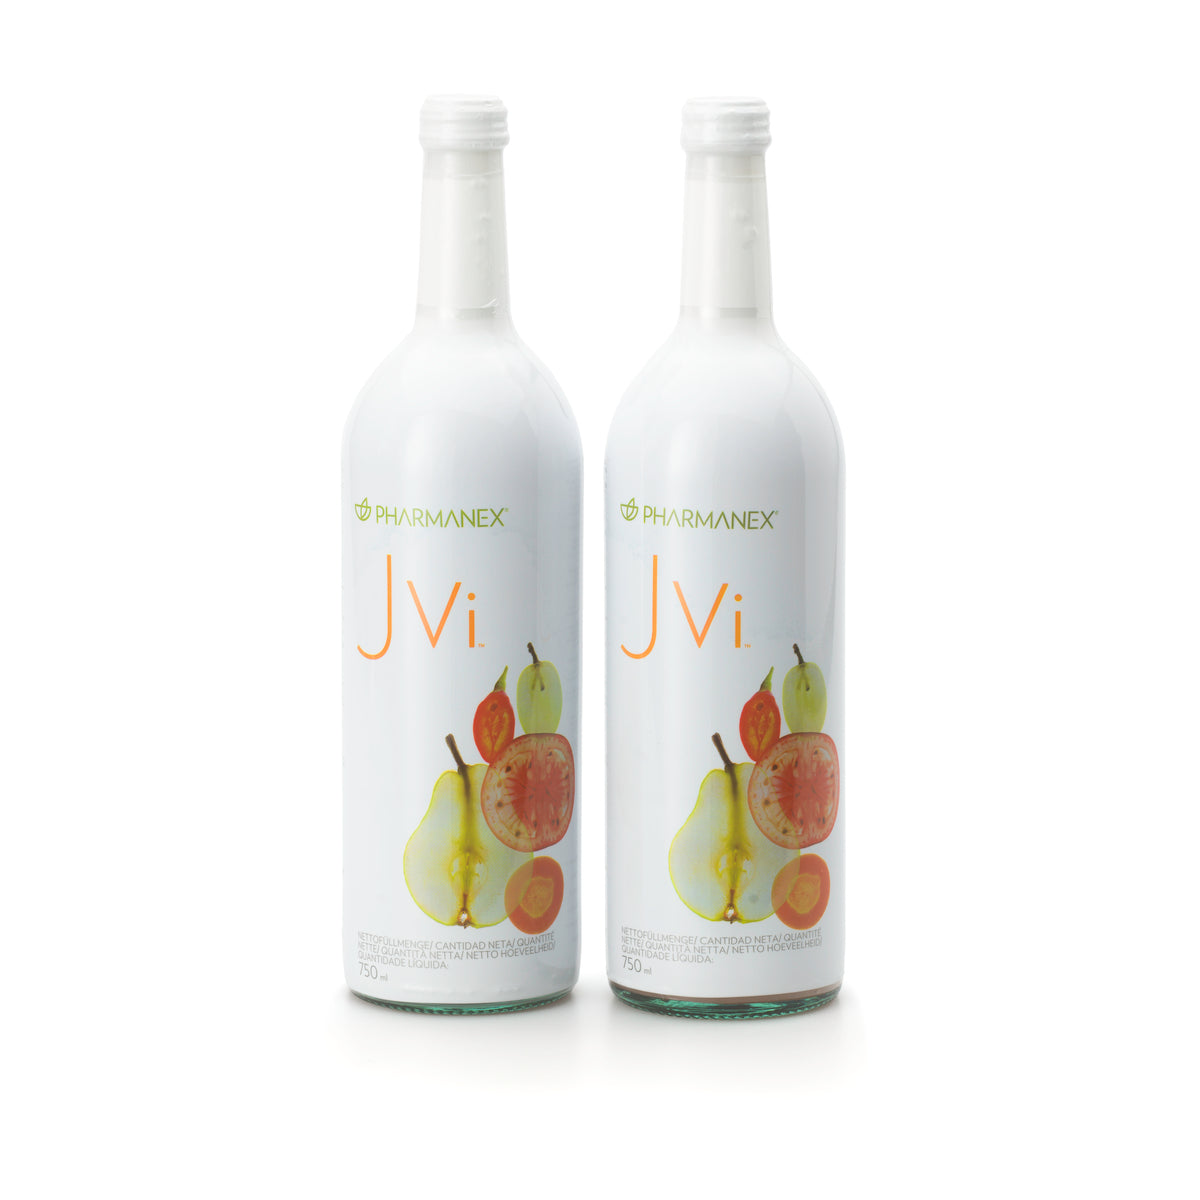 JVi - Bevanda vitaminica da Nu Skin